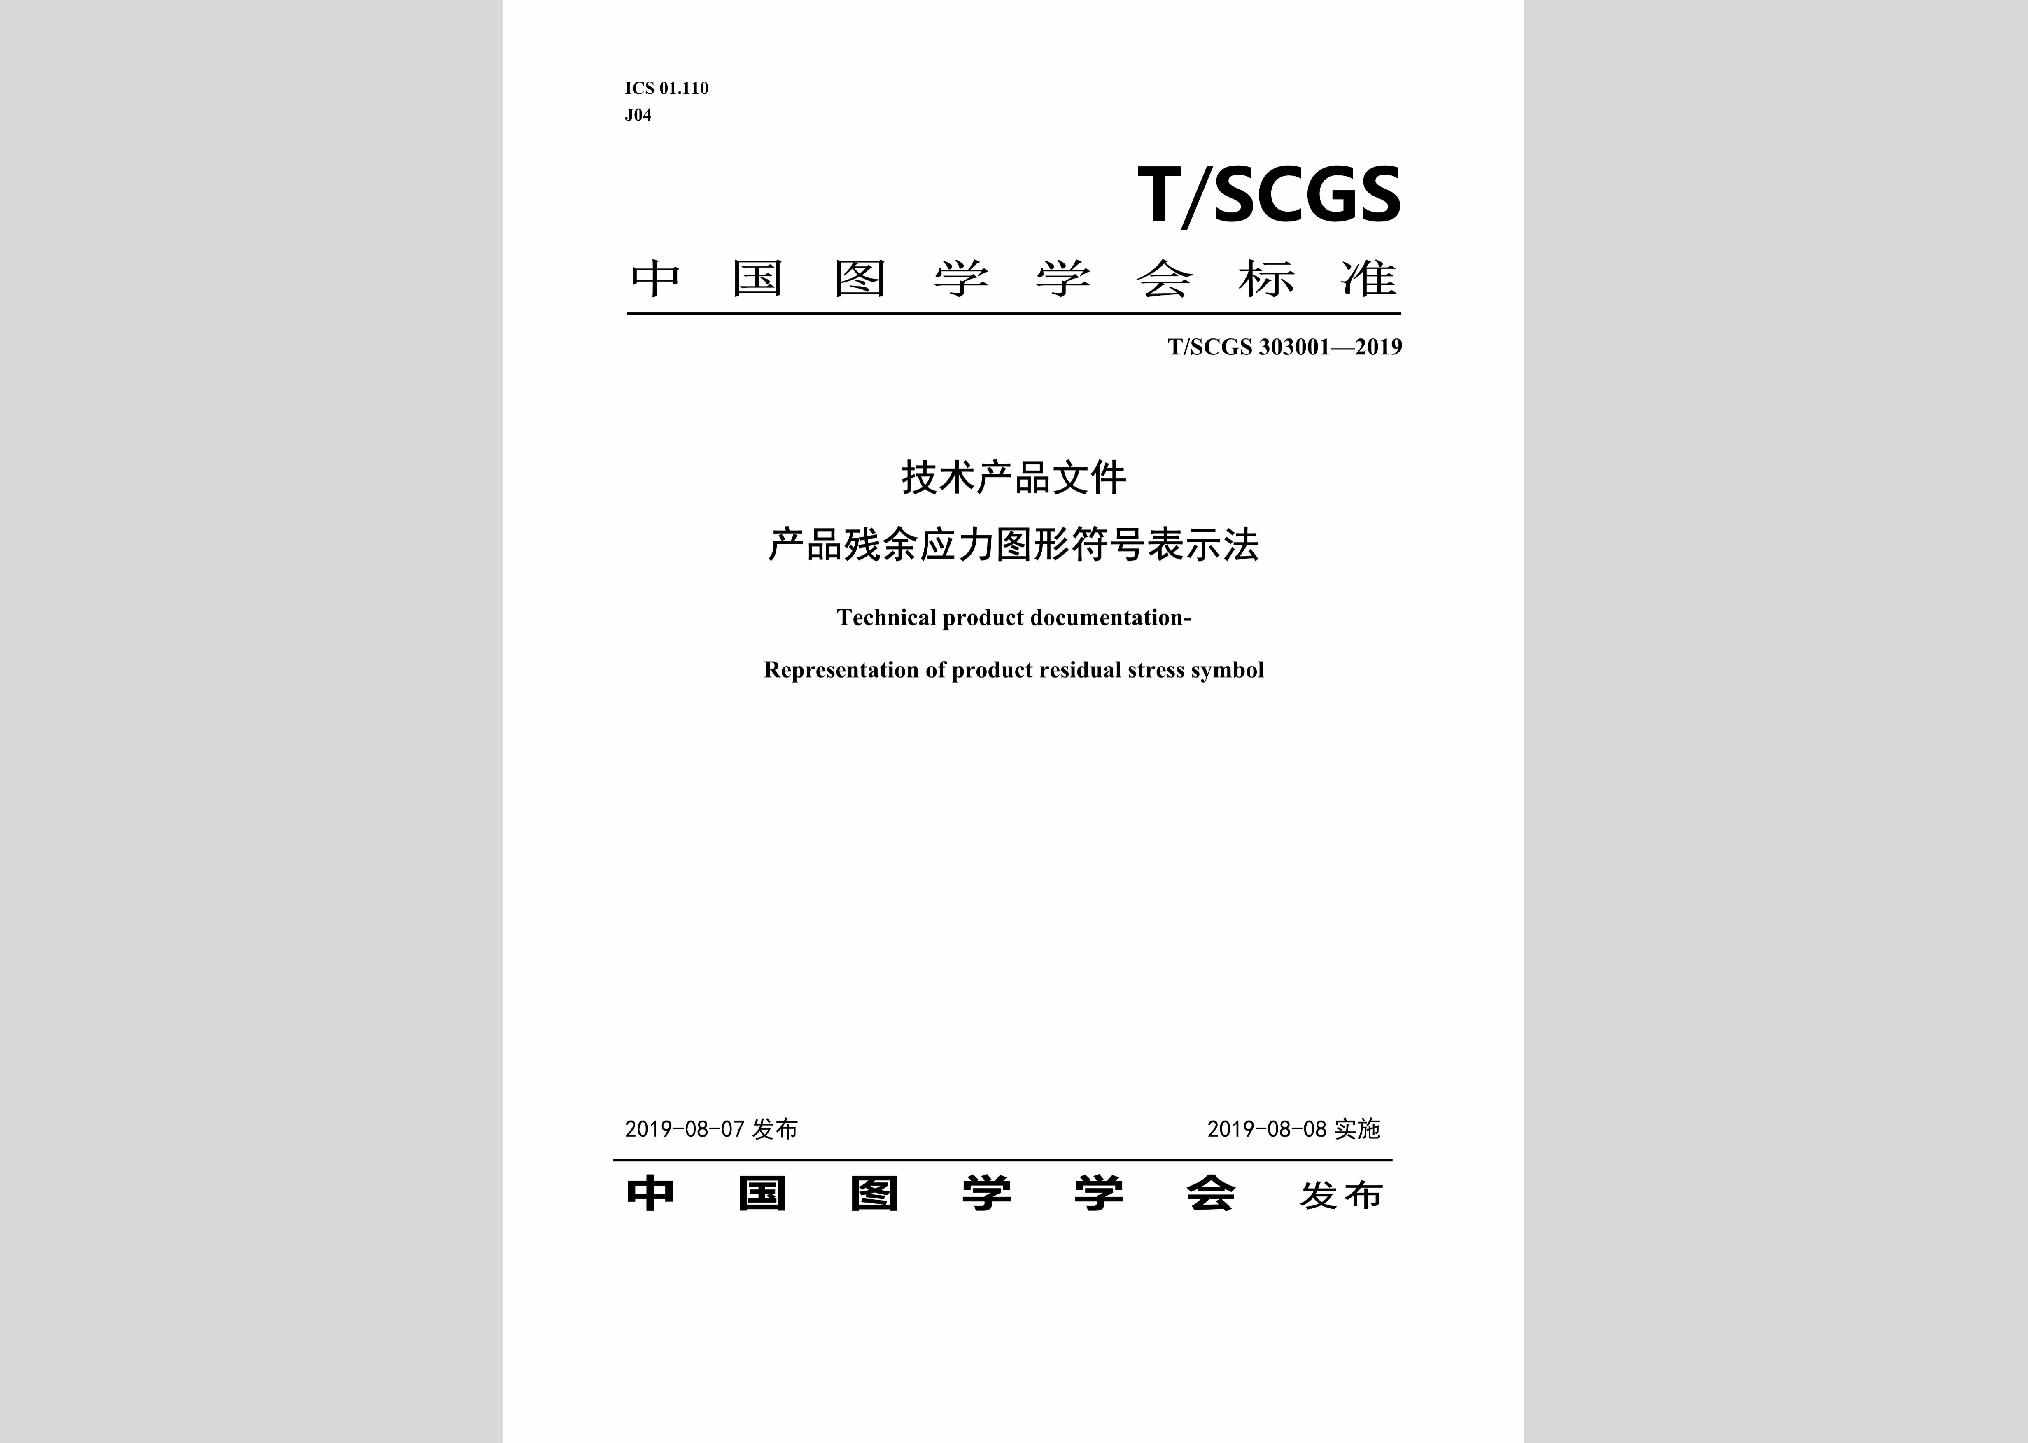 T/SCGS303001-2019：技术产品文件产品残余应力图形符号表示法